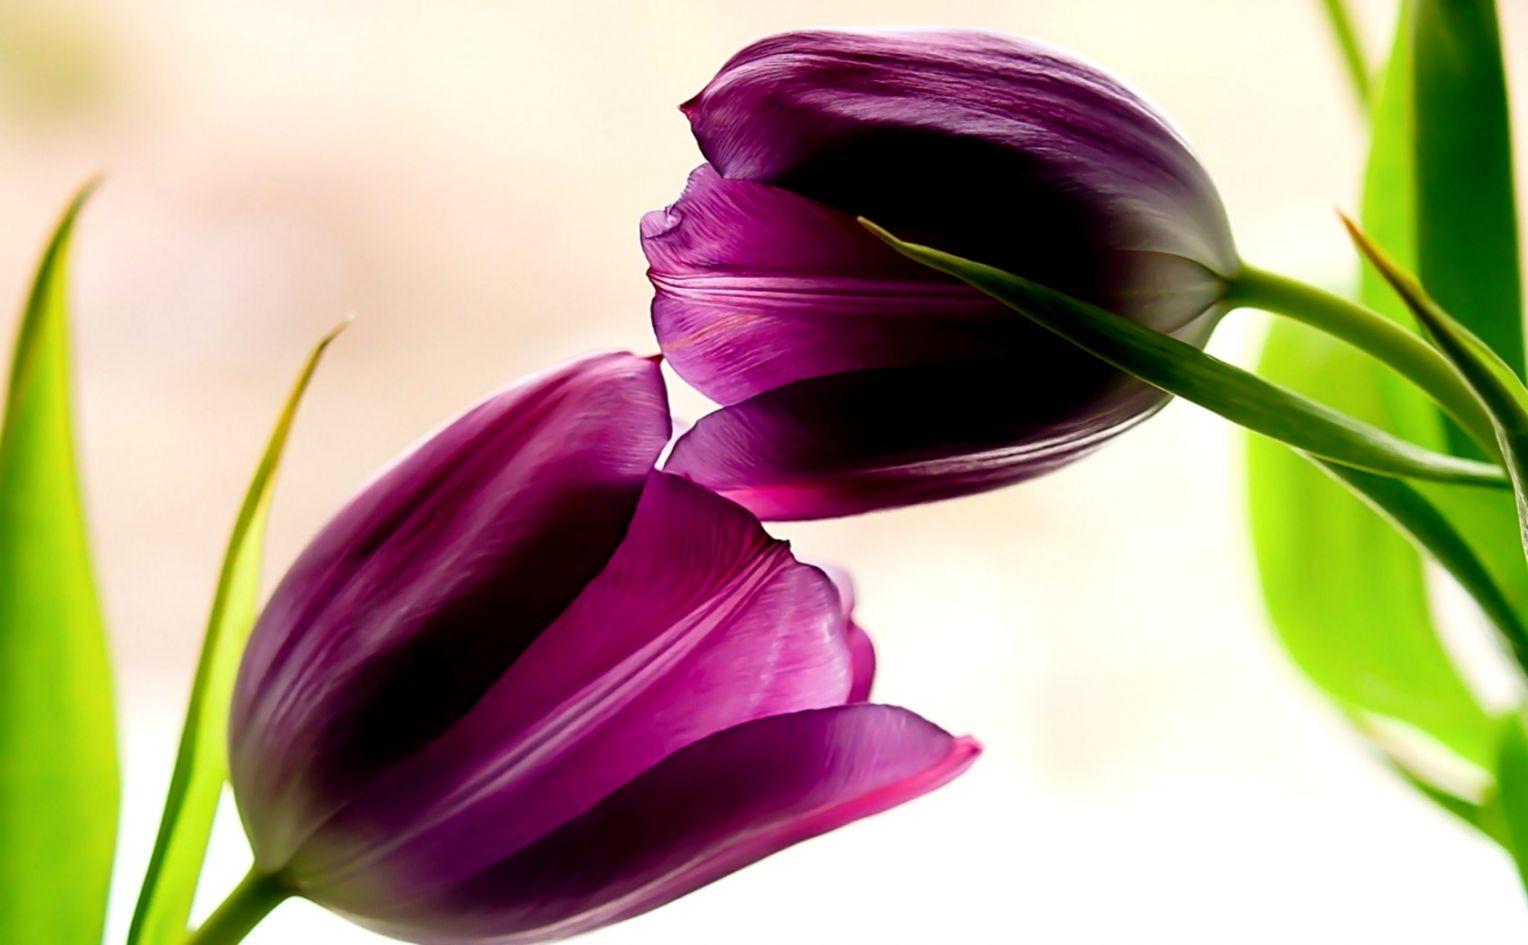 Tulips Purple Flowers HD Wallpaper